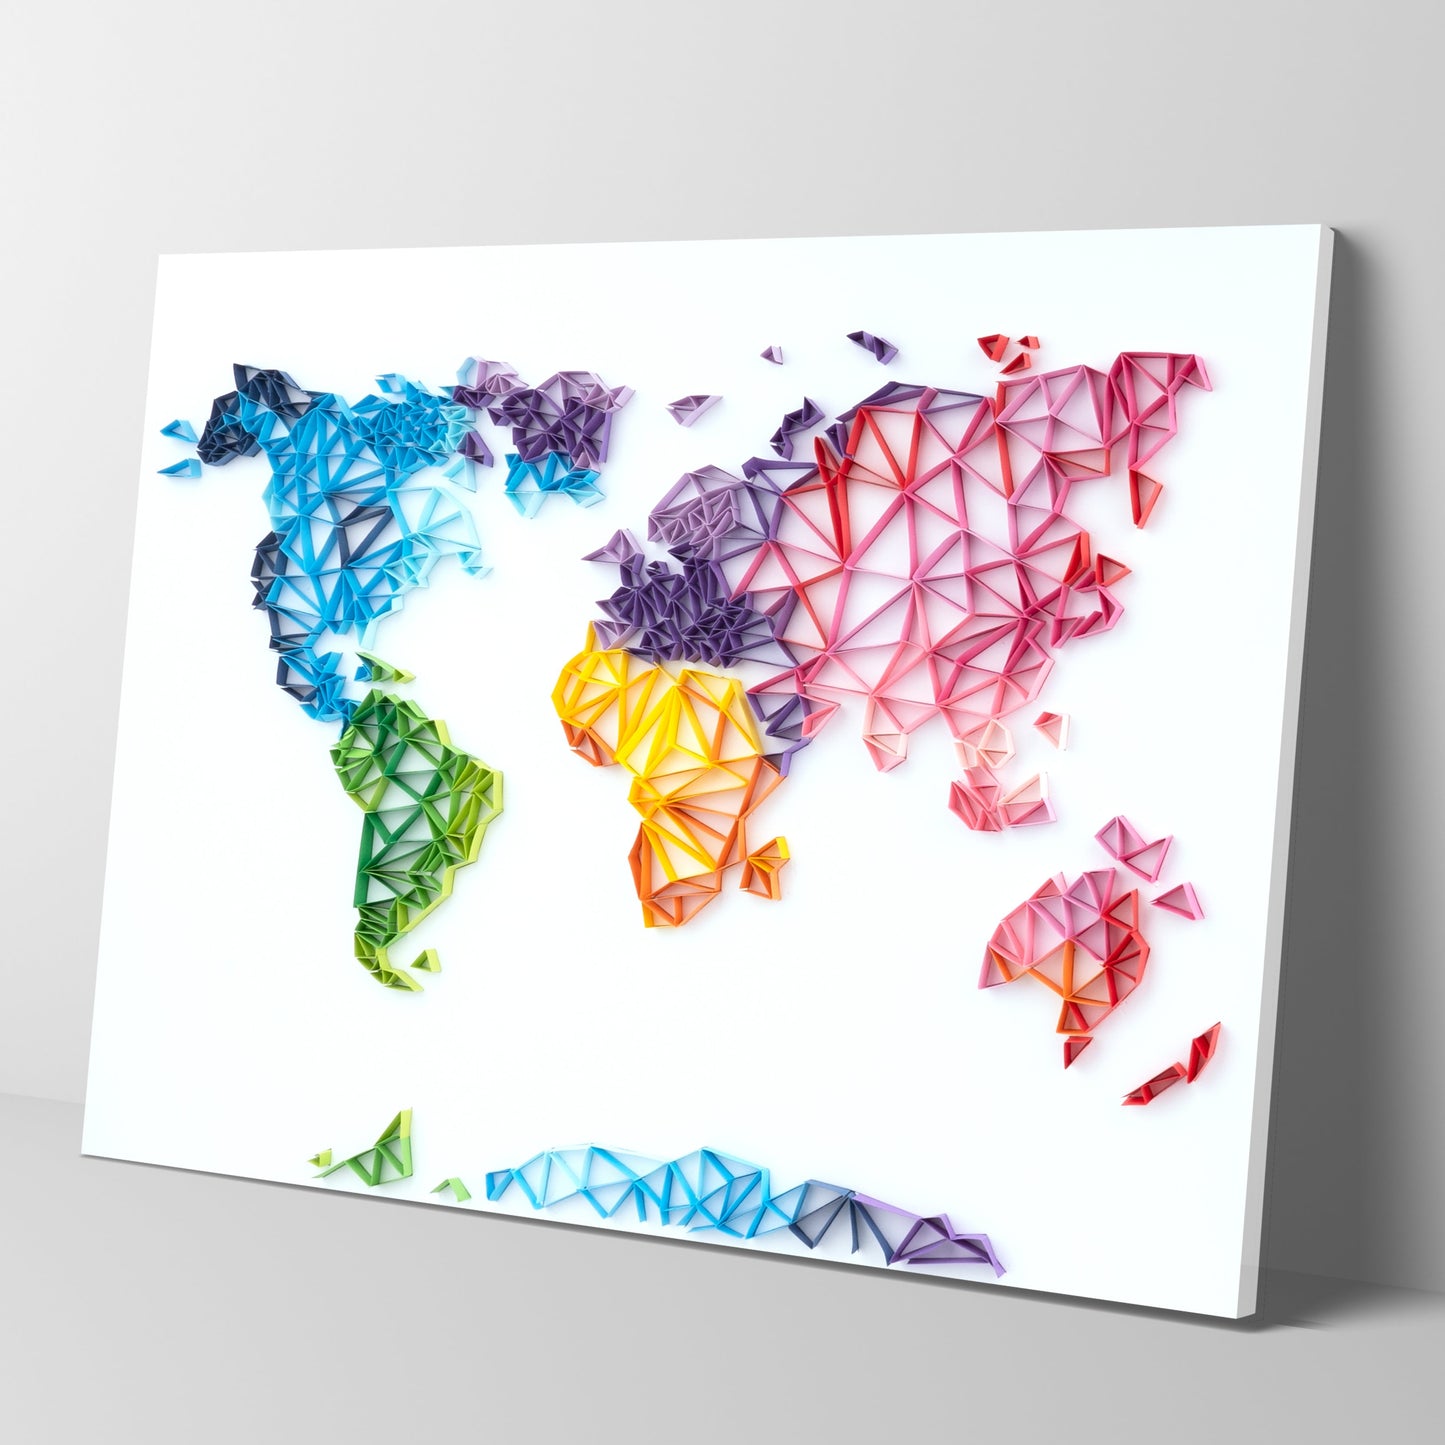 Kit de pintura de filigrana de papel - Mapa del mundo  ( 16*20inch )